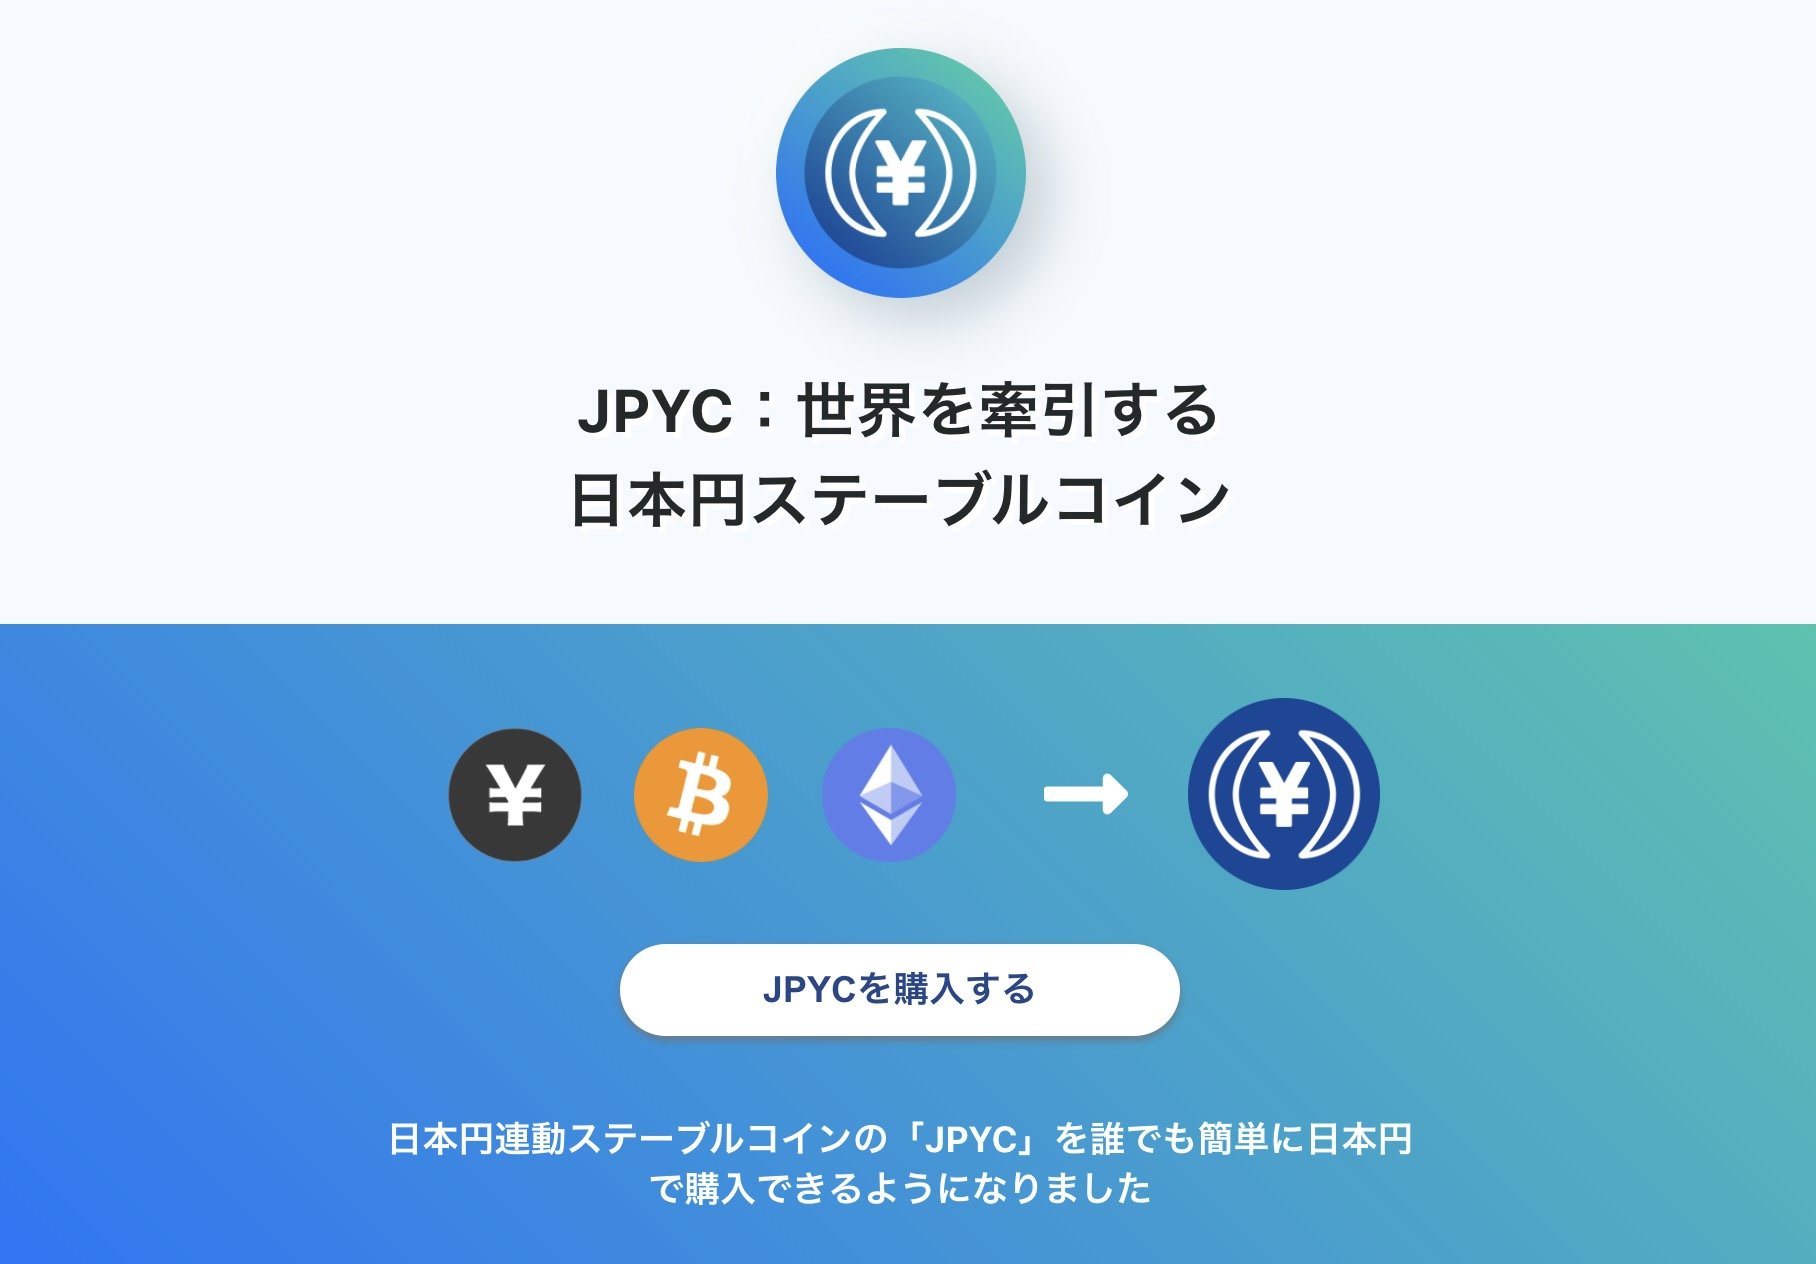 一般向け日本円ステーブルコイン、JPYCoin（JPYC）がリリース　1億円分発行